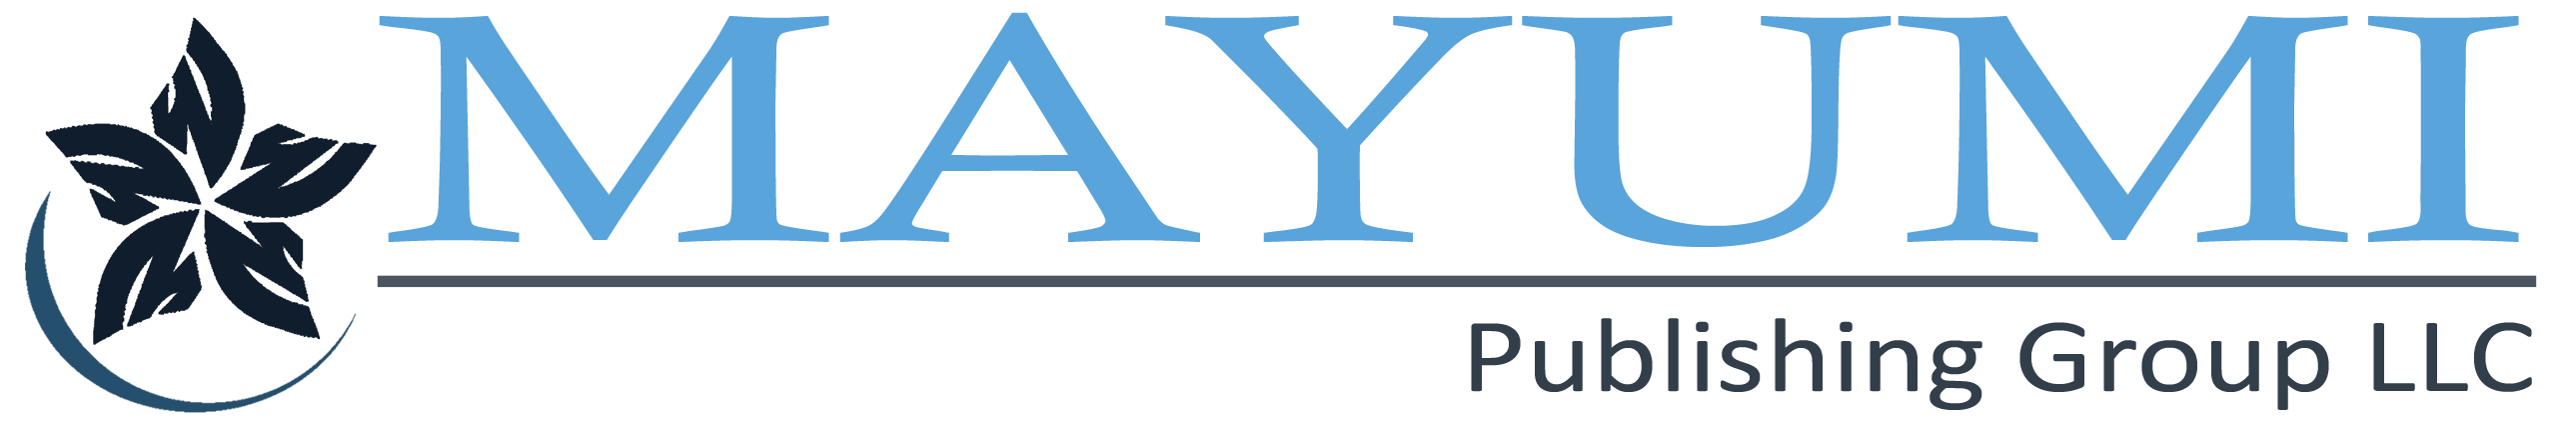 mayumi publishing mobile logo